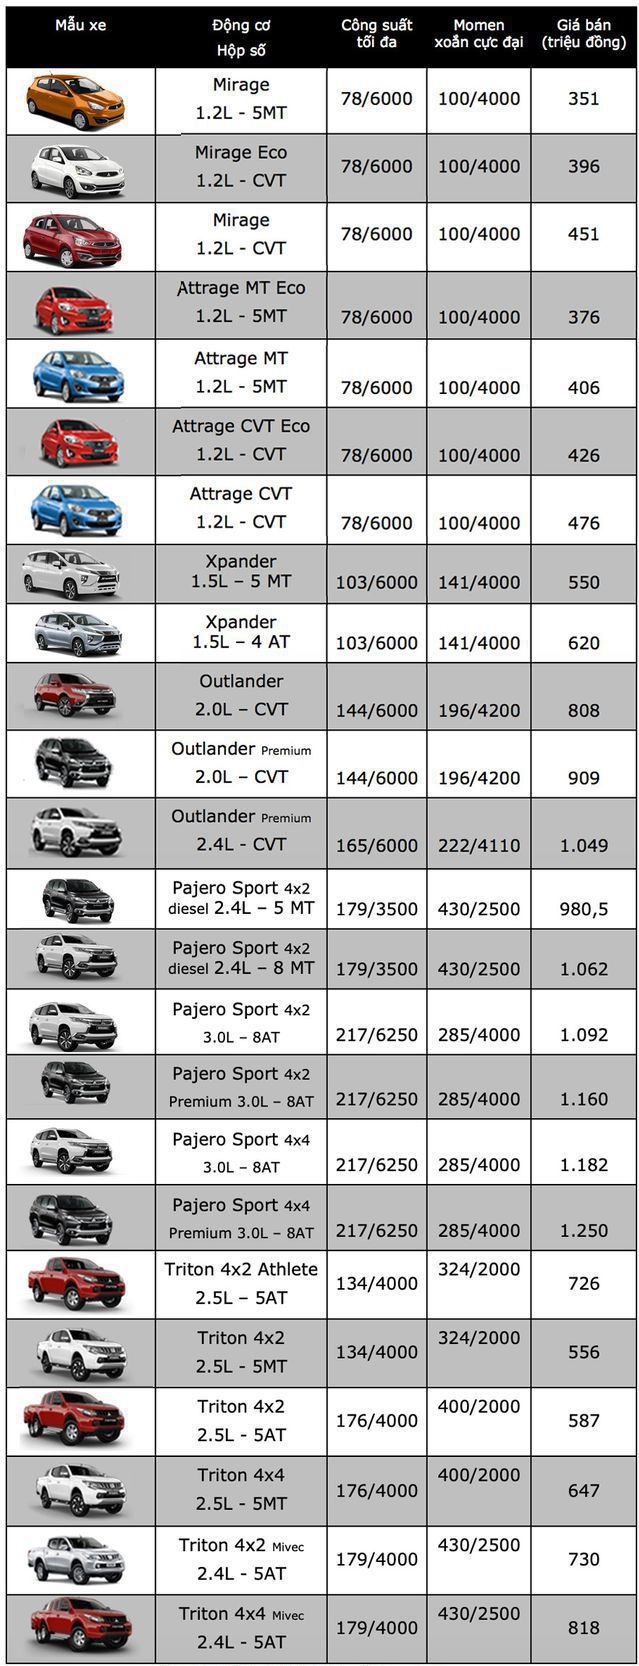 Thị trường - Bảng giá ô tô Mitsubishi mới nhất tháng 7/2019: Pajero Sport dao động từ 980,5-1,25 tỷ đồng (Hình 2).